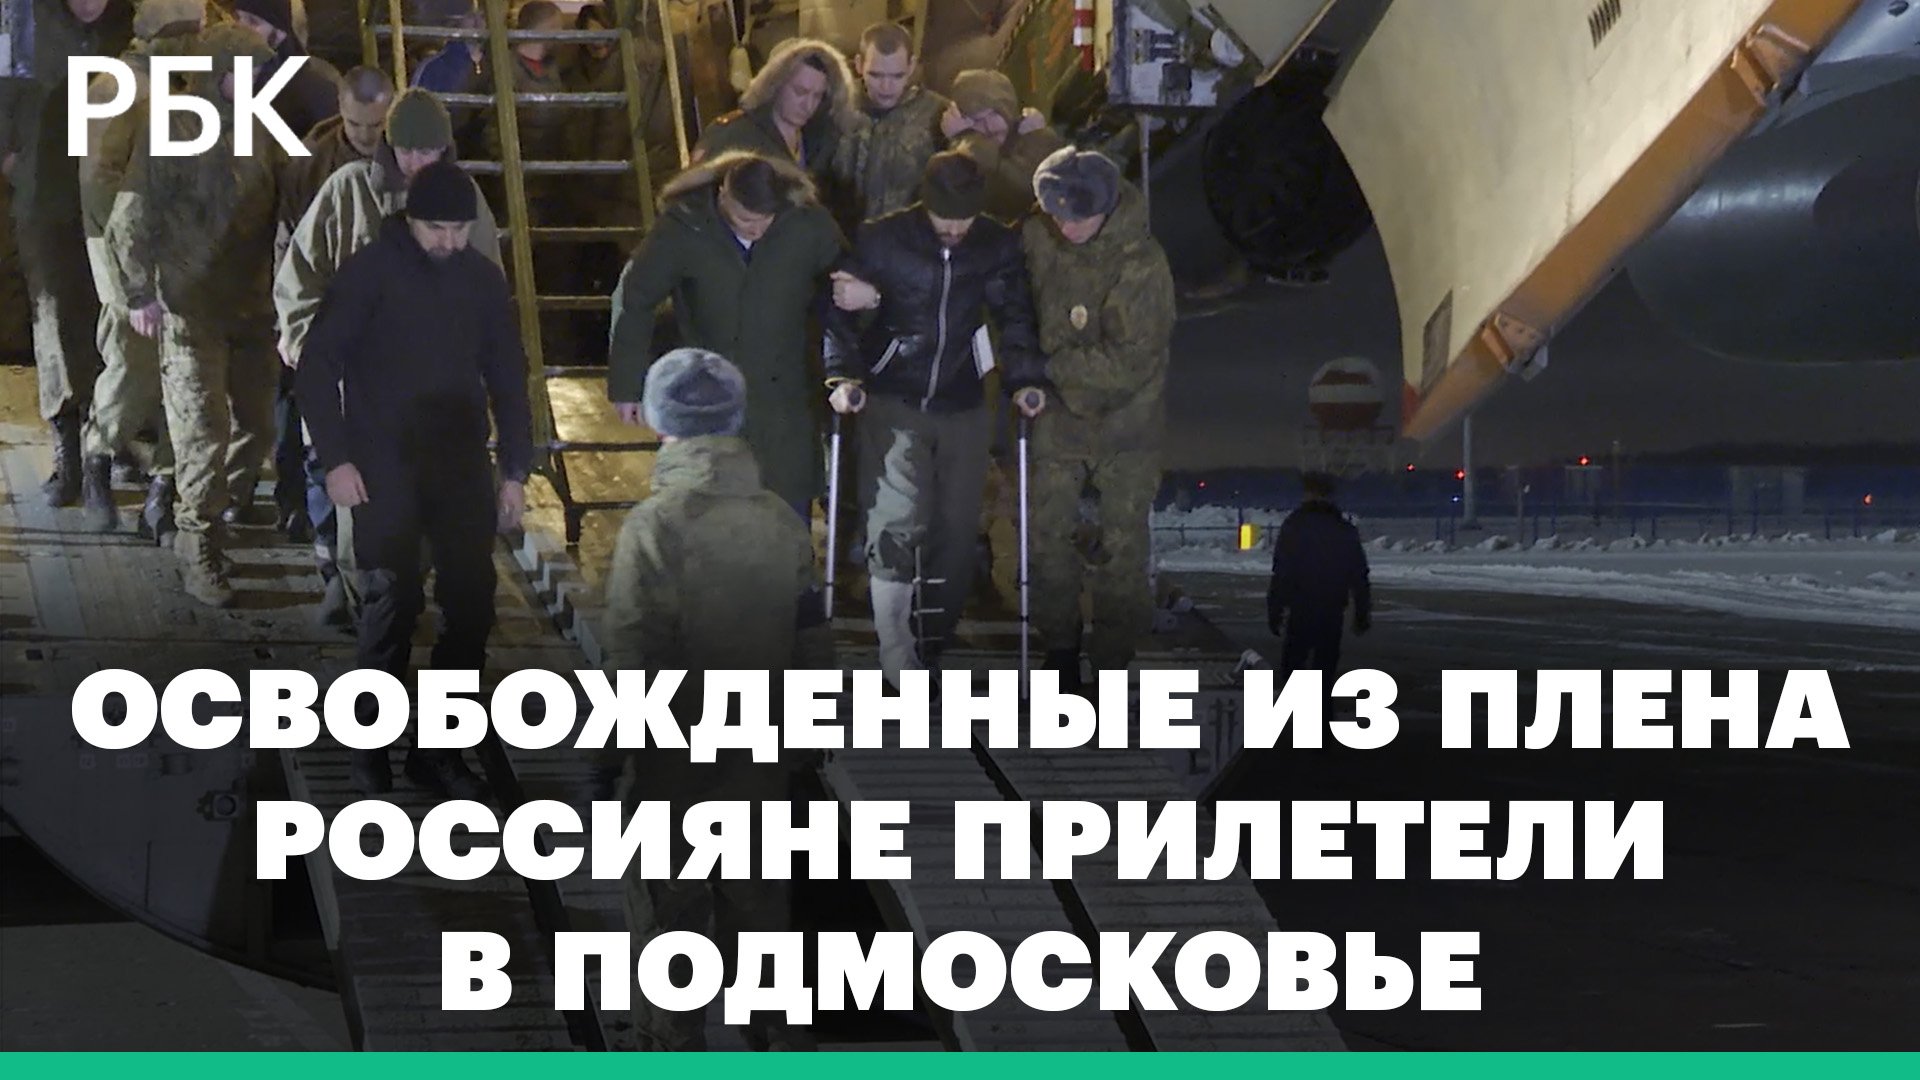 Освобожденные из украинского плена россияне прилетели в Подмосковье